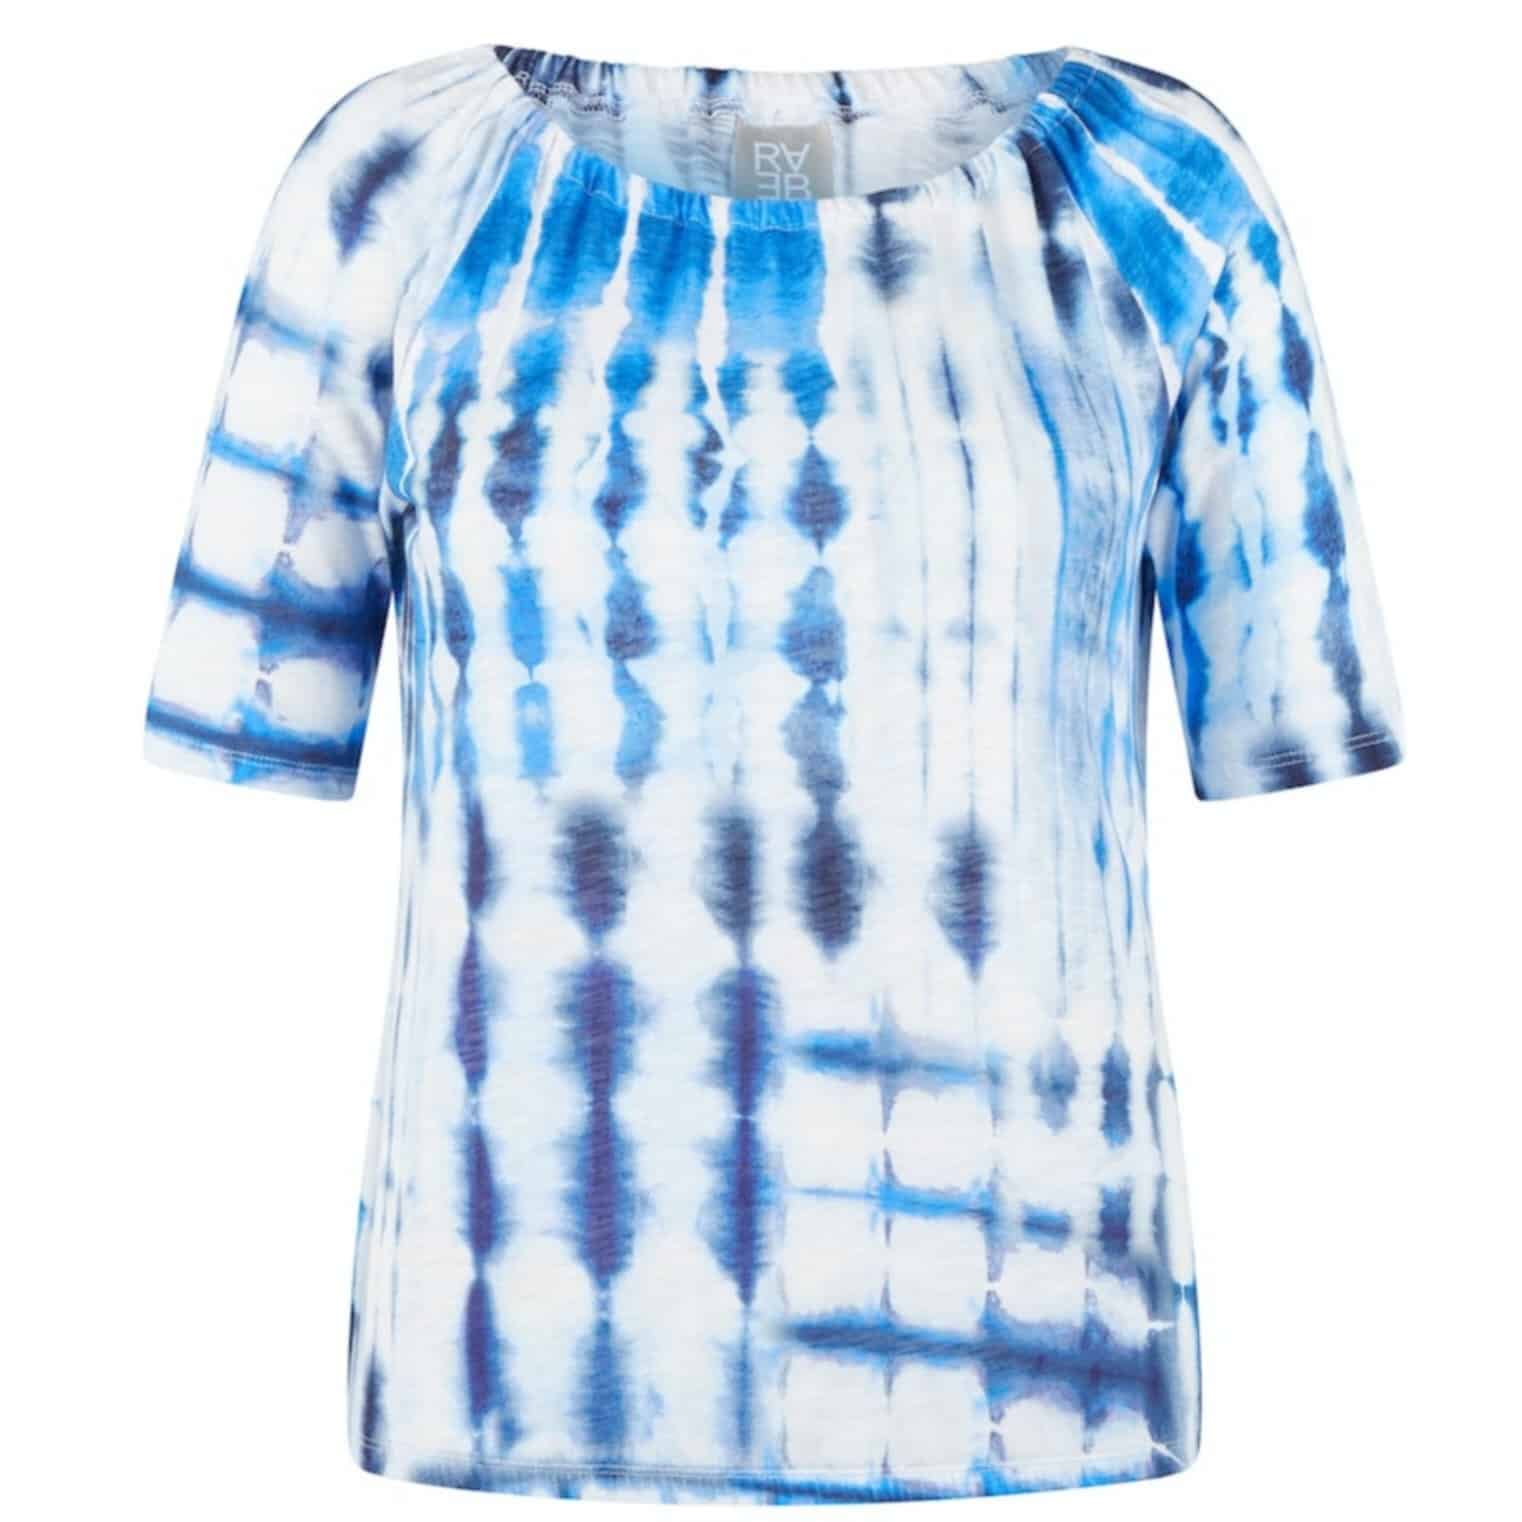 Leichtes T-Shirt von Rabe Moden Artikel 52-231350 in blau weiß gemustert, für größe Größen, Naturfaser, kein Schwitzen